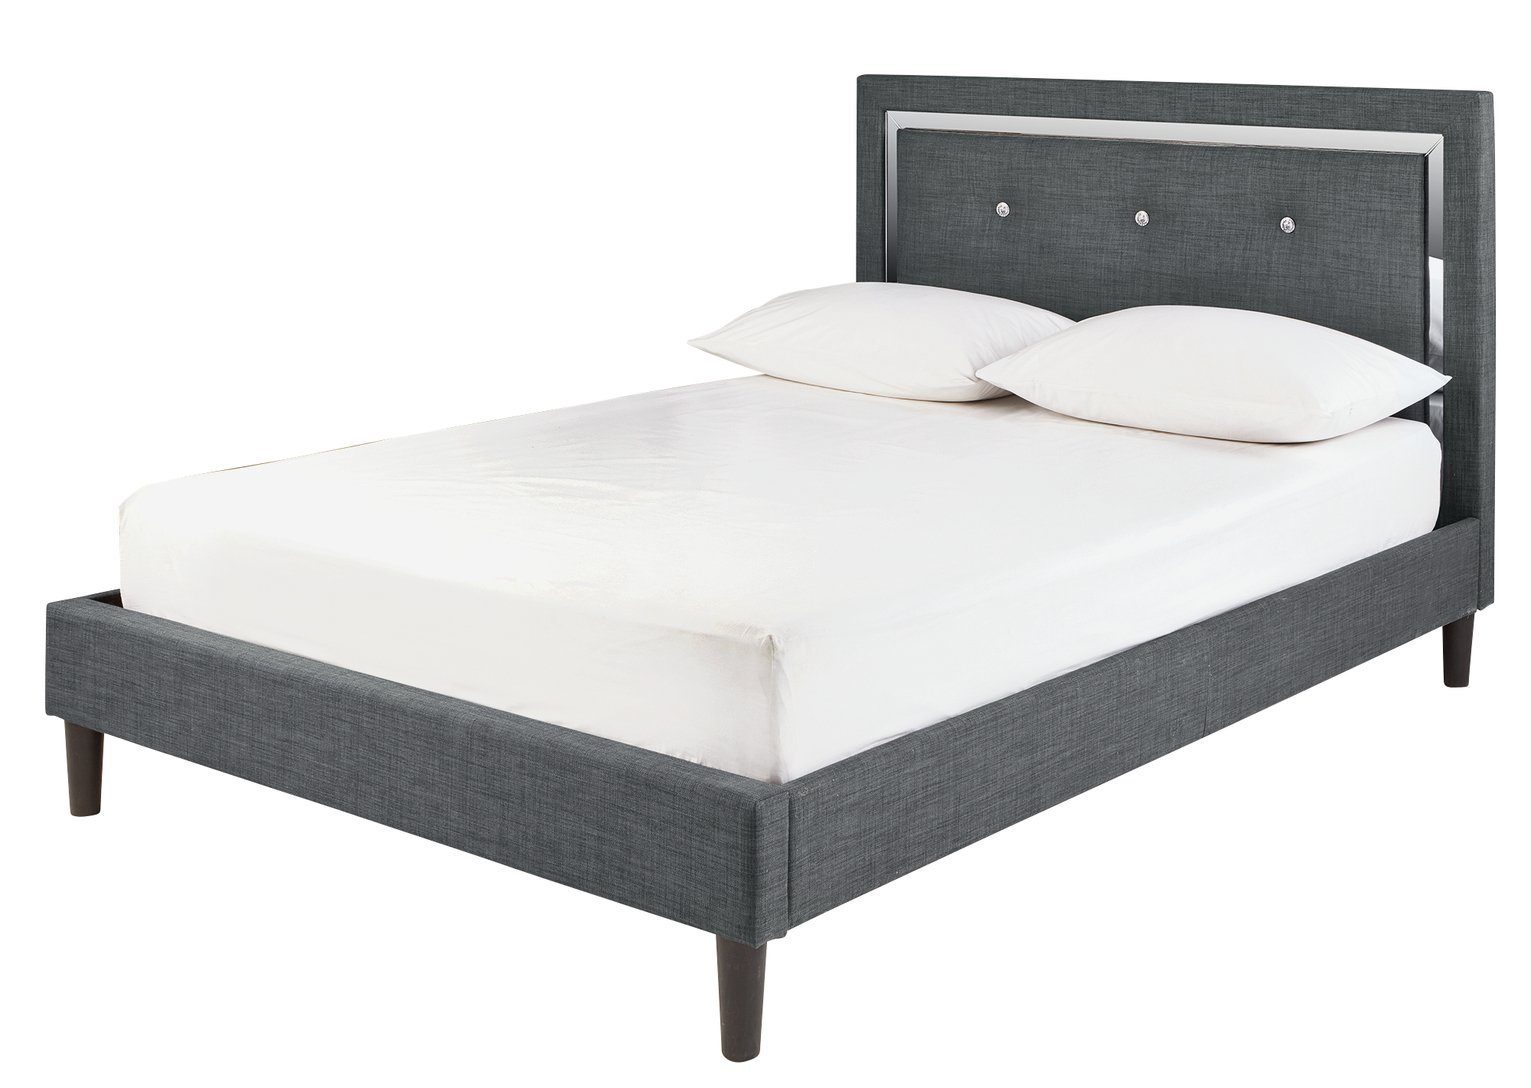 Argos Home Evangeline Kingsize Bed Frame - Charcoal